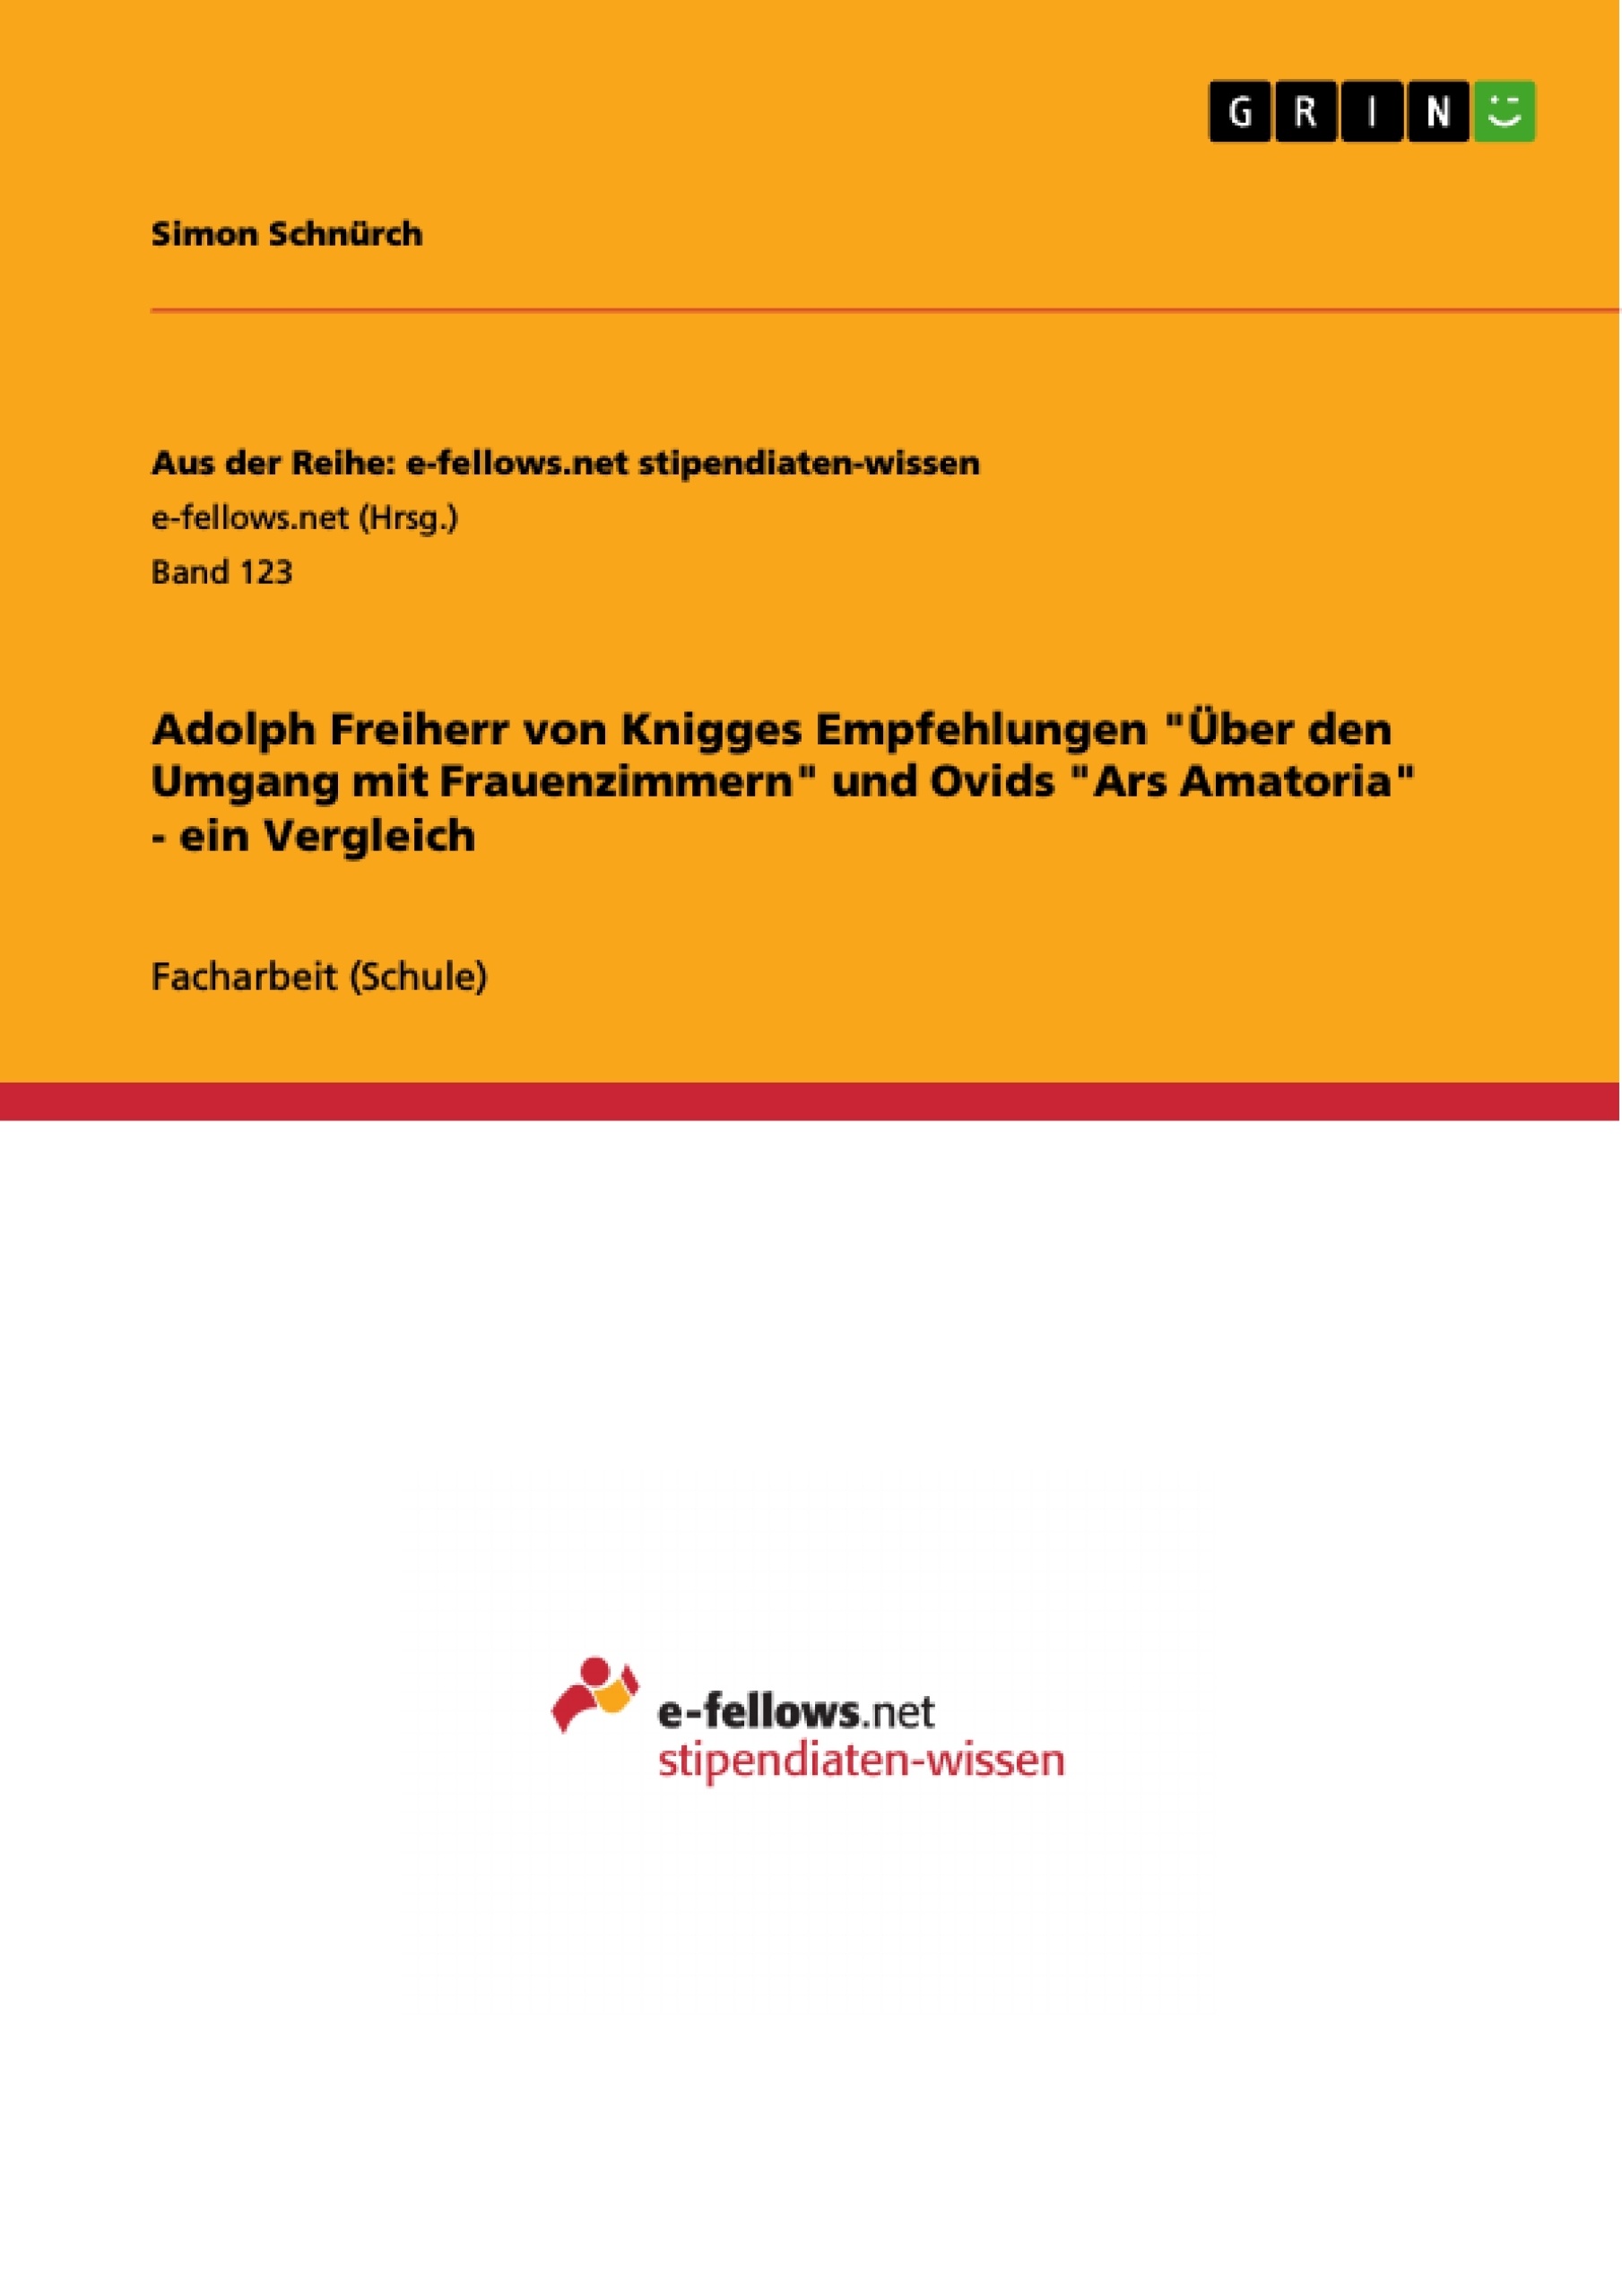 Título: Adolph Freiherr von Knigges Empfehlungen  "Über den Umgang mit Frauenzimmern" und Ovids "Ars Amatoria" - ein Vergleich